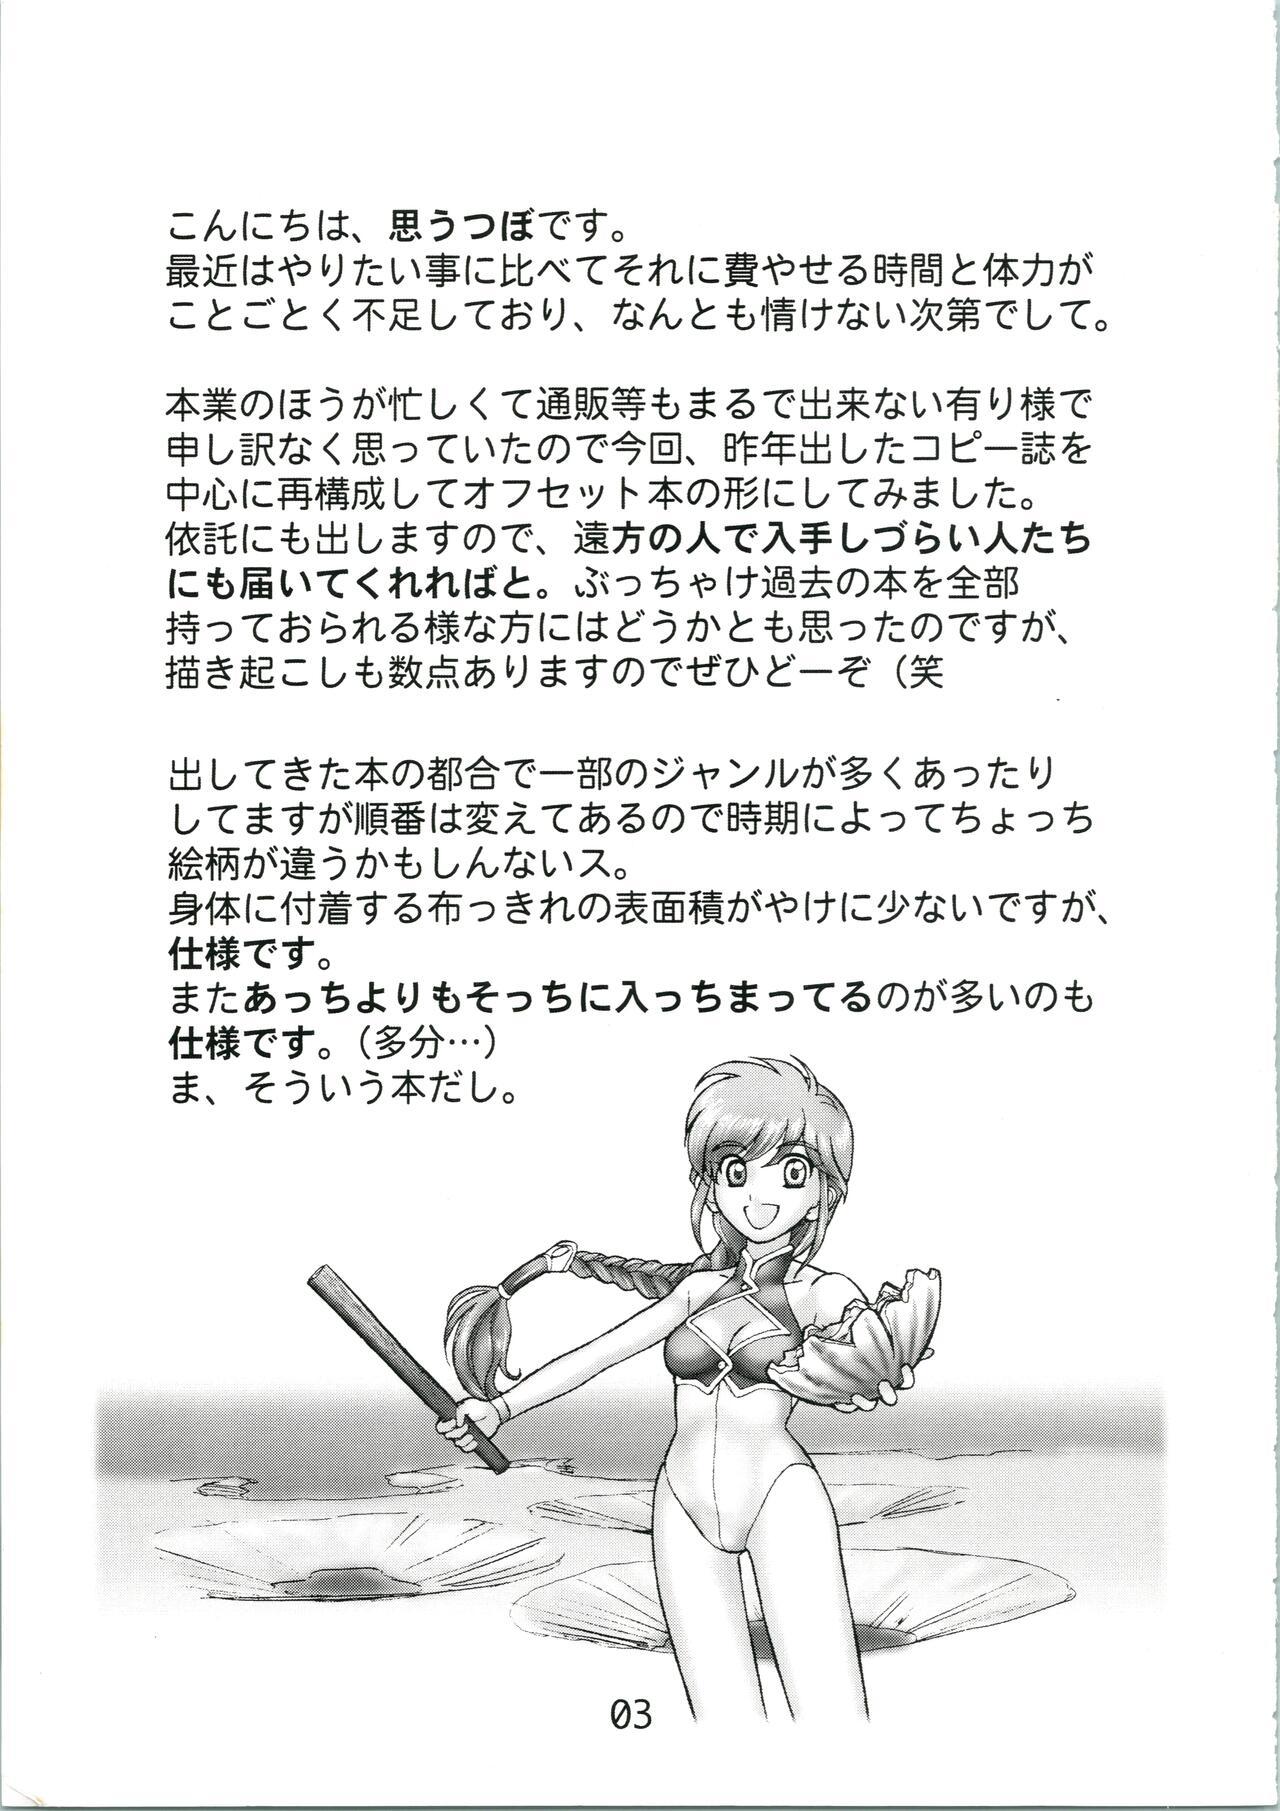 Tugging Urabidou Tsuushin Okawari! - Gunparade march Sonic soldier borgman Yumeria Casting - Page 3